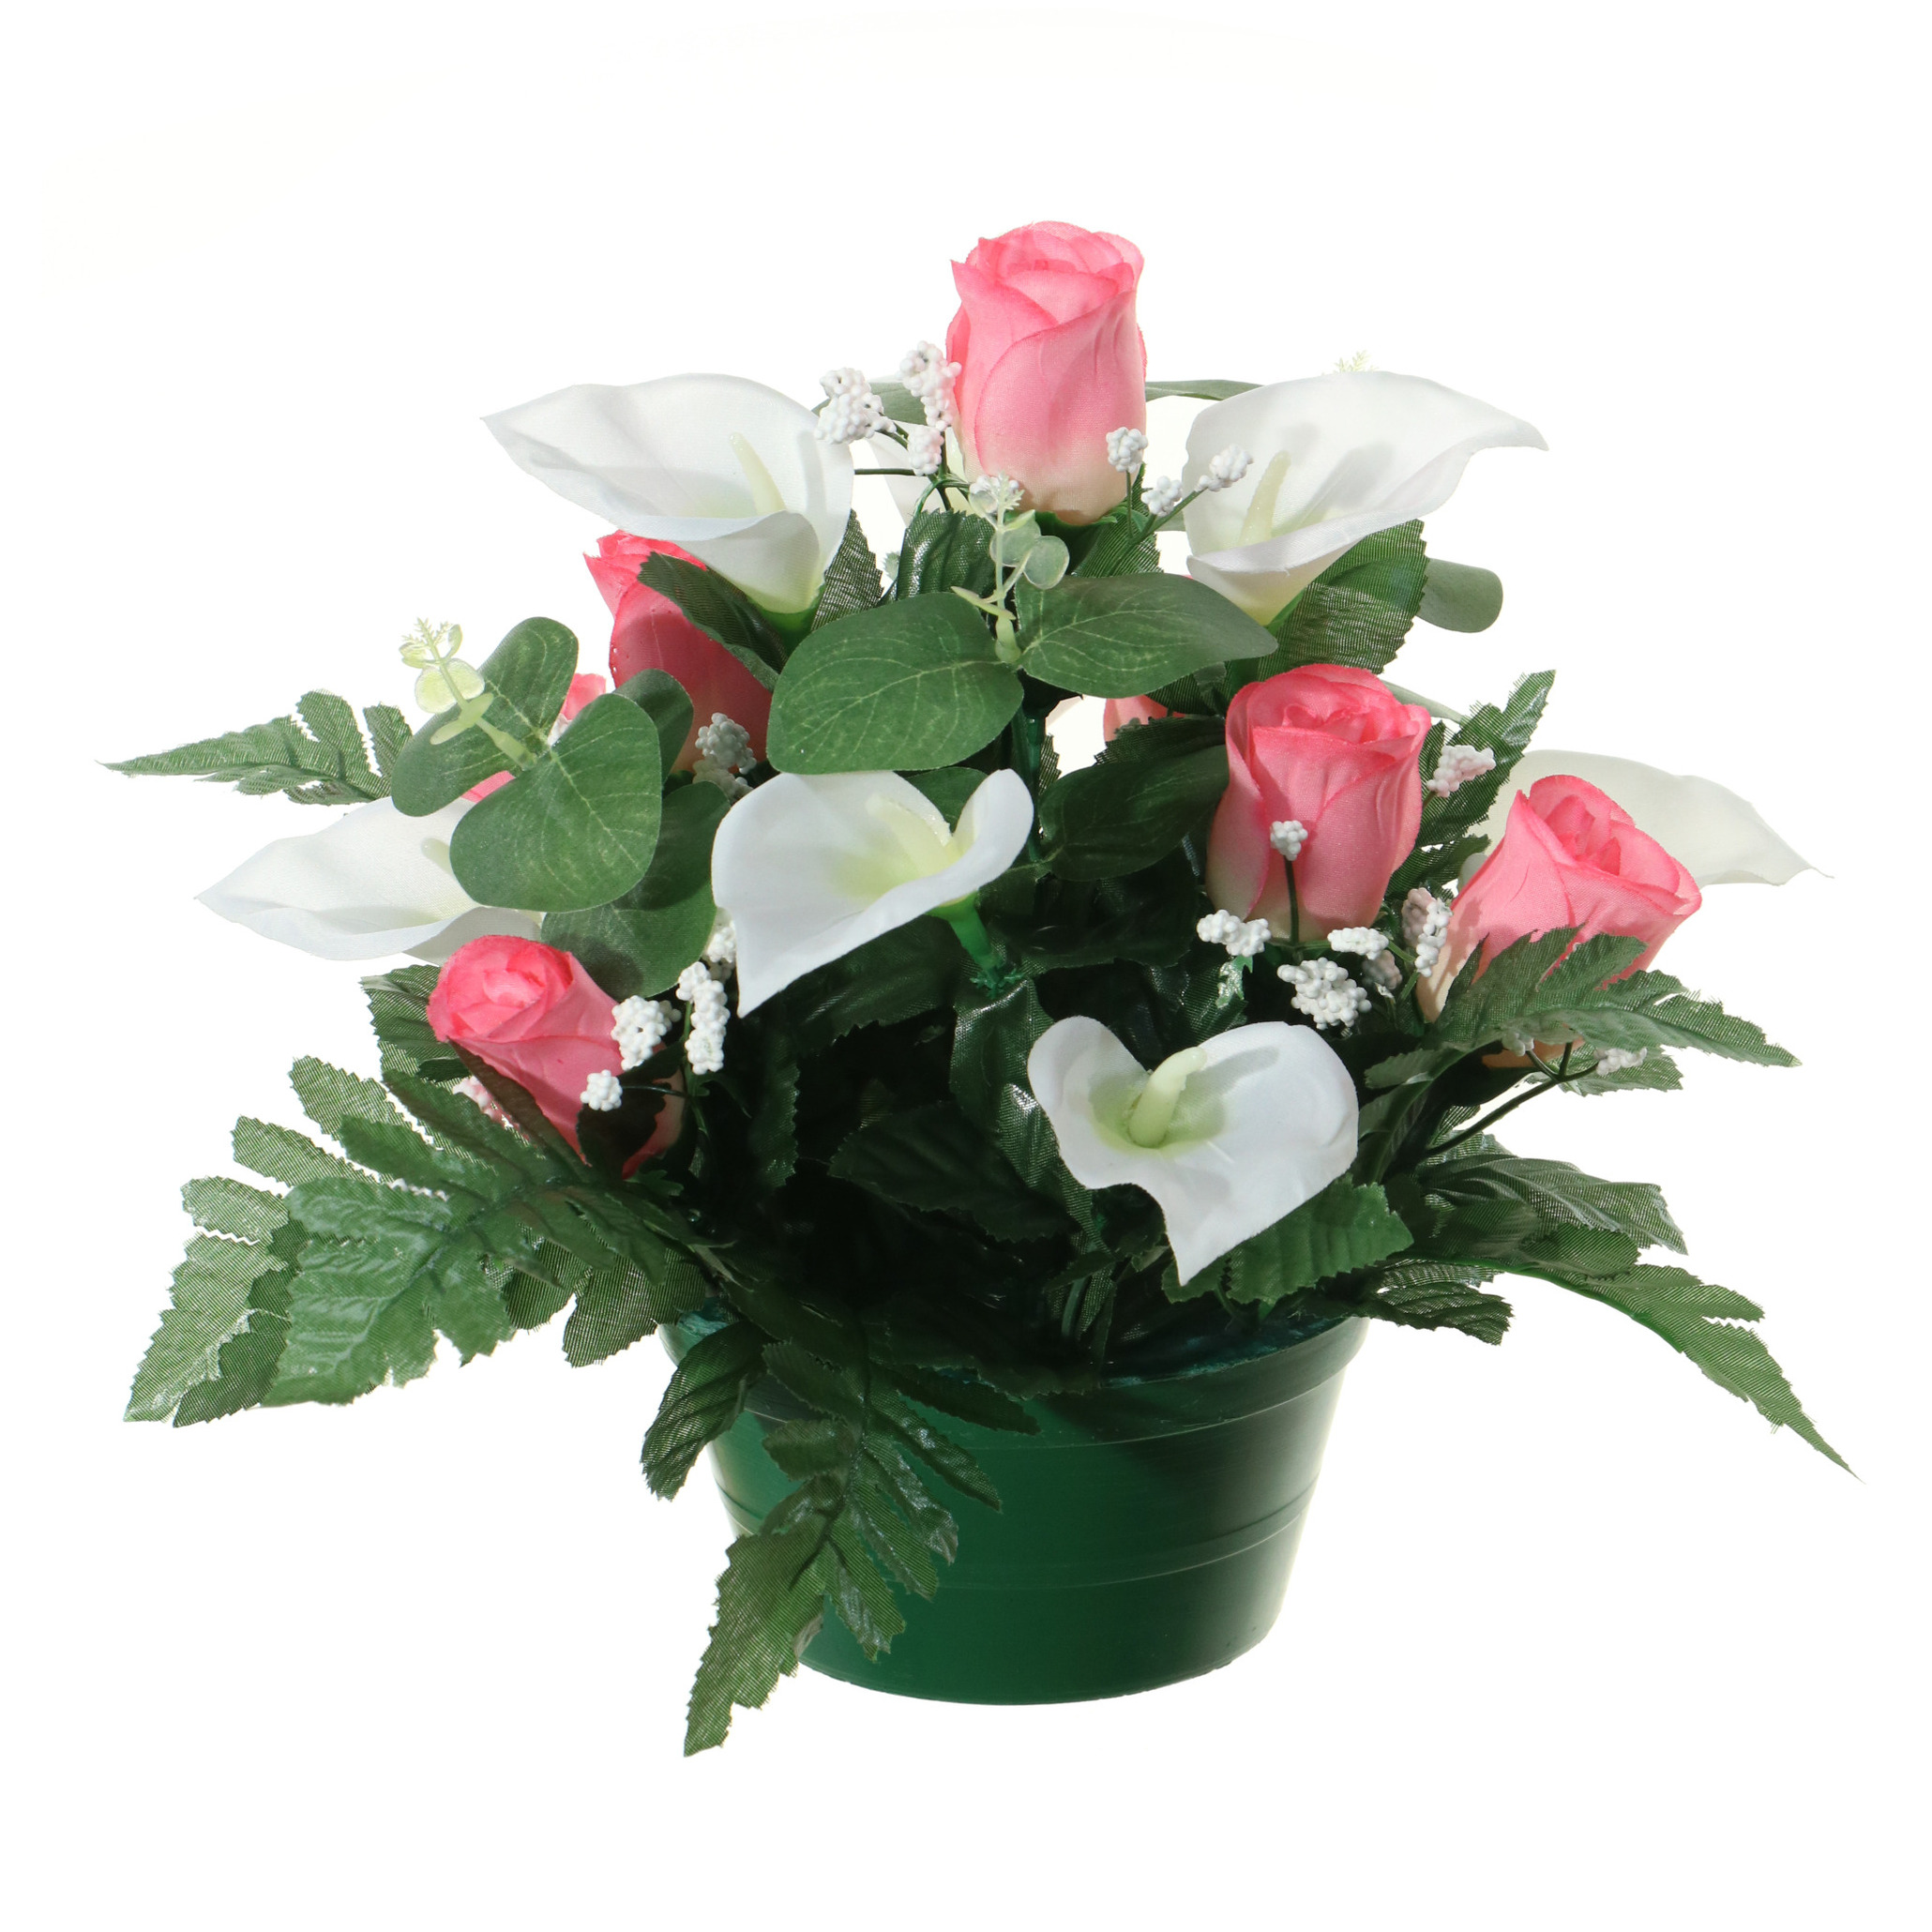 Kunstbloemen plantje in pot - wit/roze - 26 cm - Bloemstuk ornament - met bladgroen